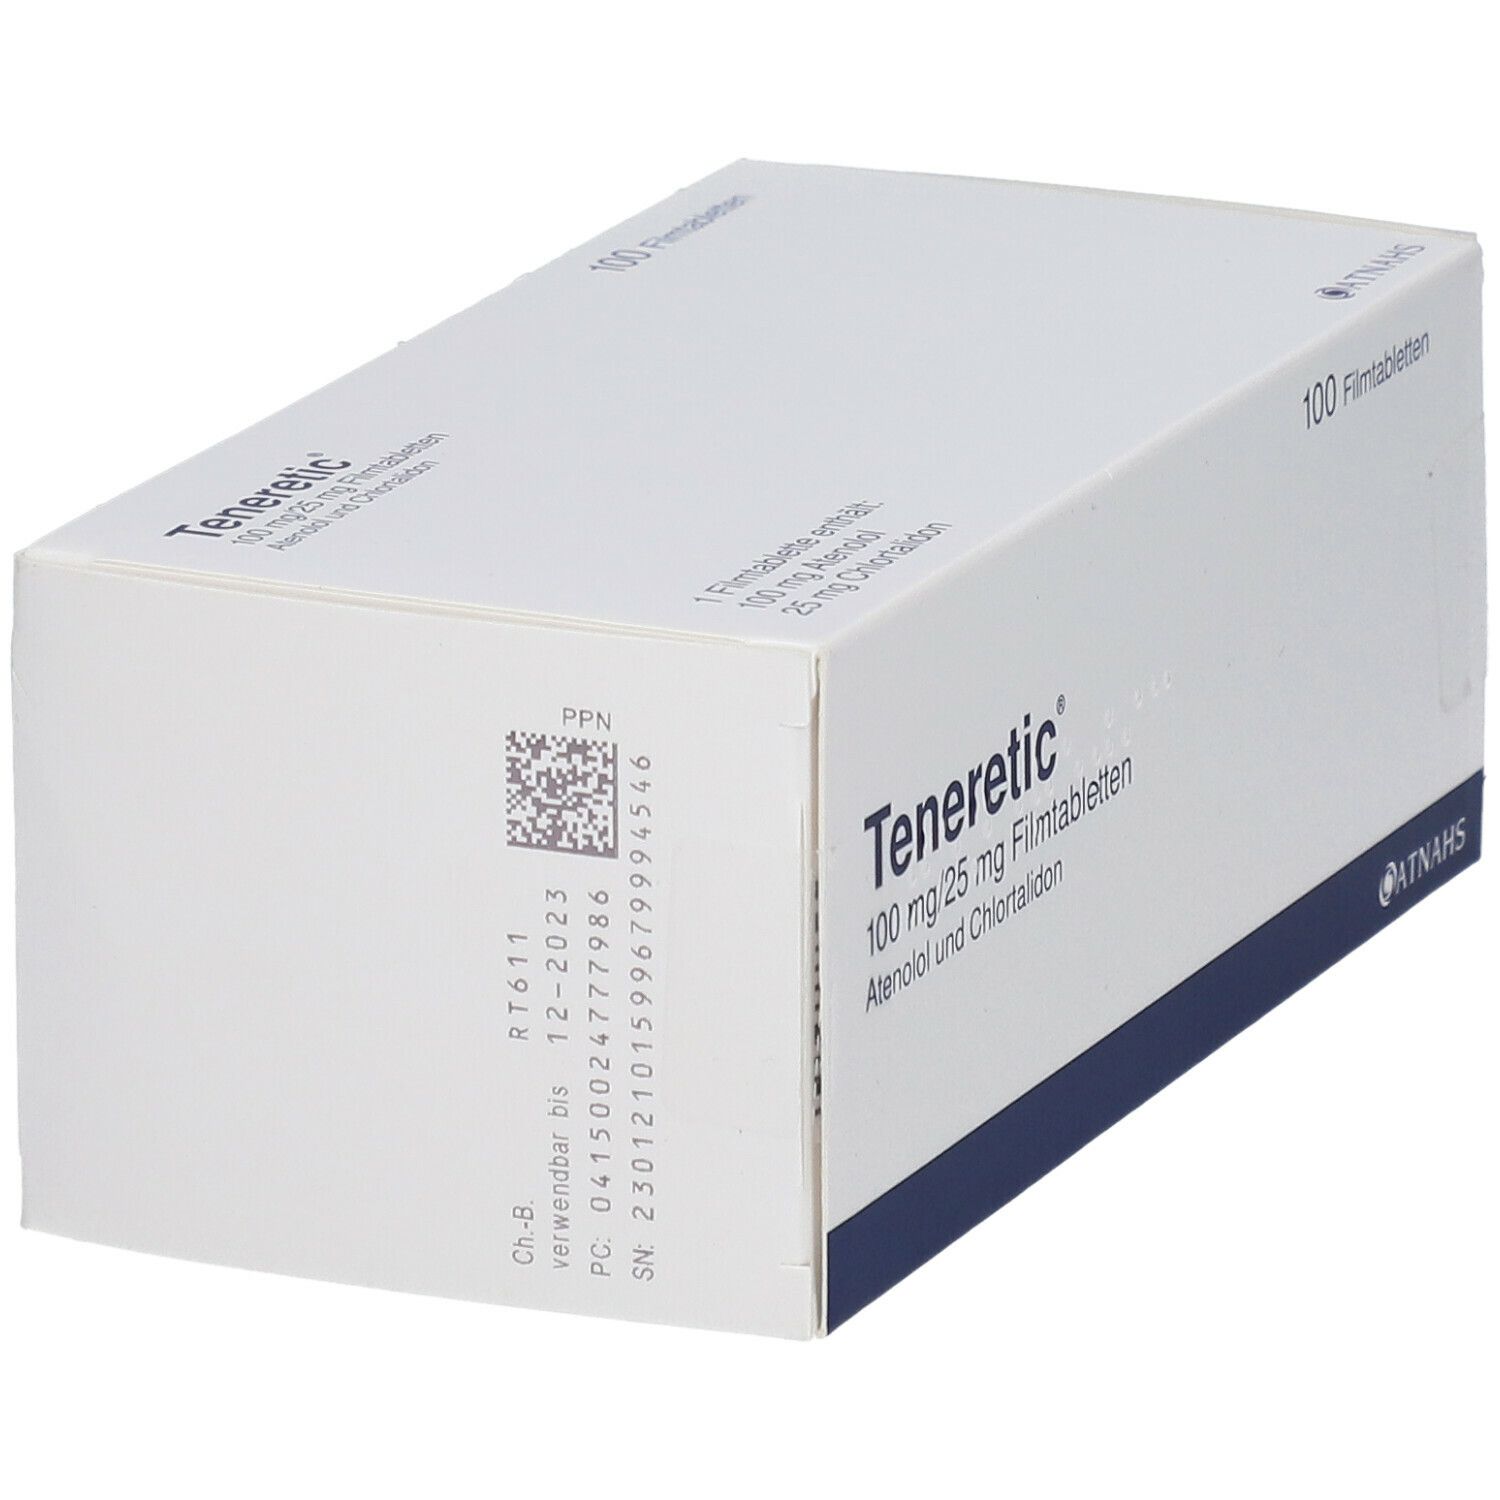 Teneretic® 100 mg/25 mg